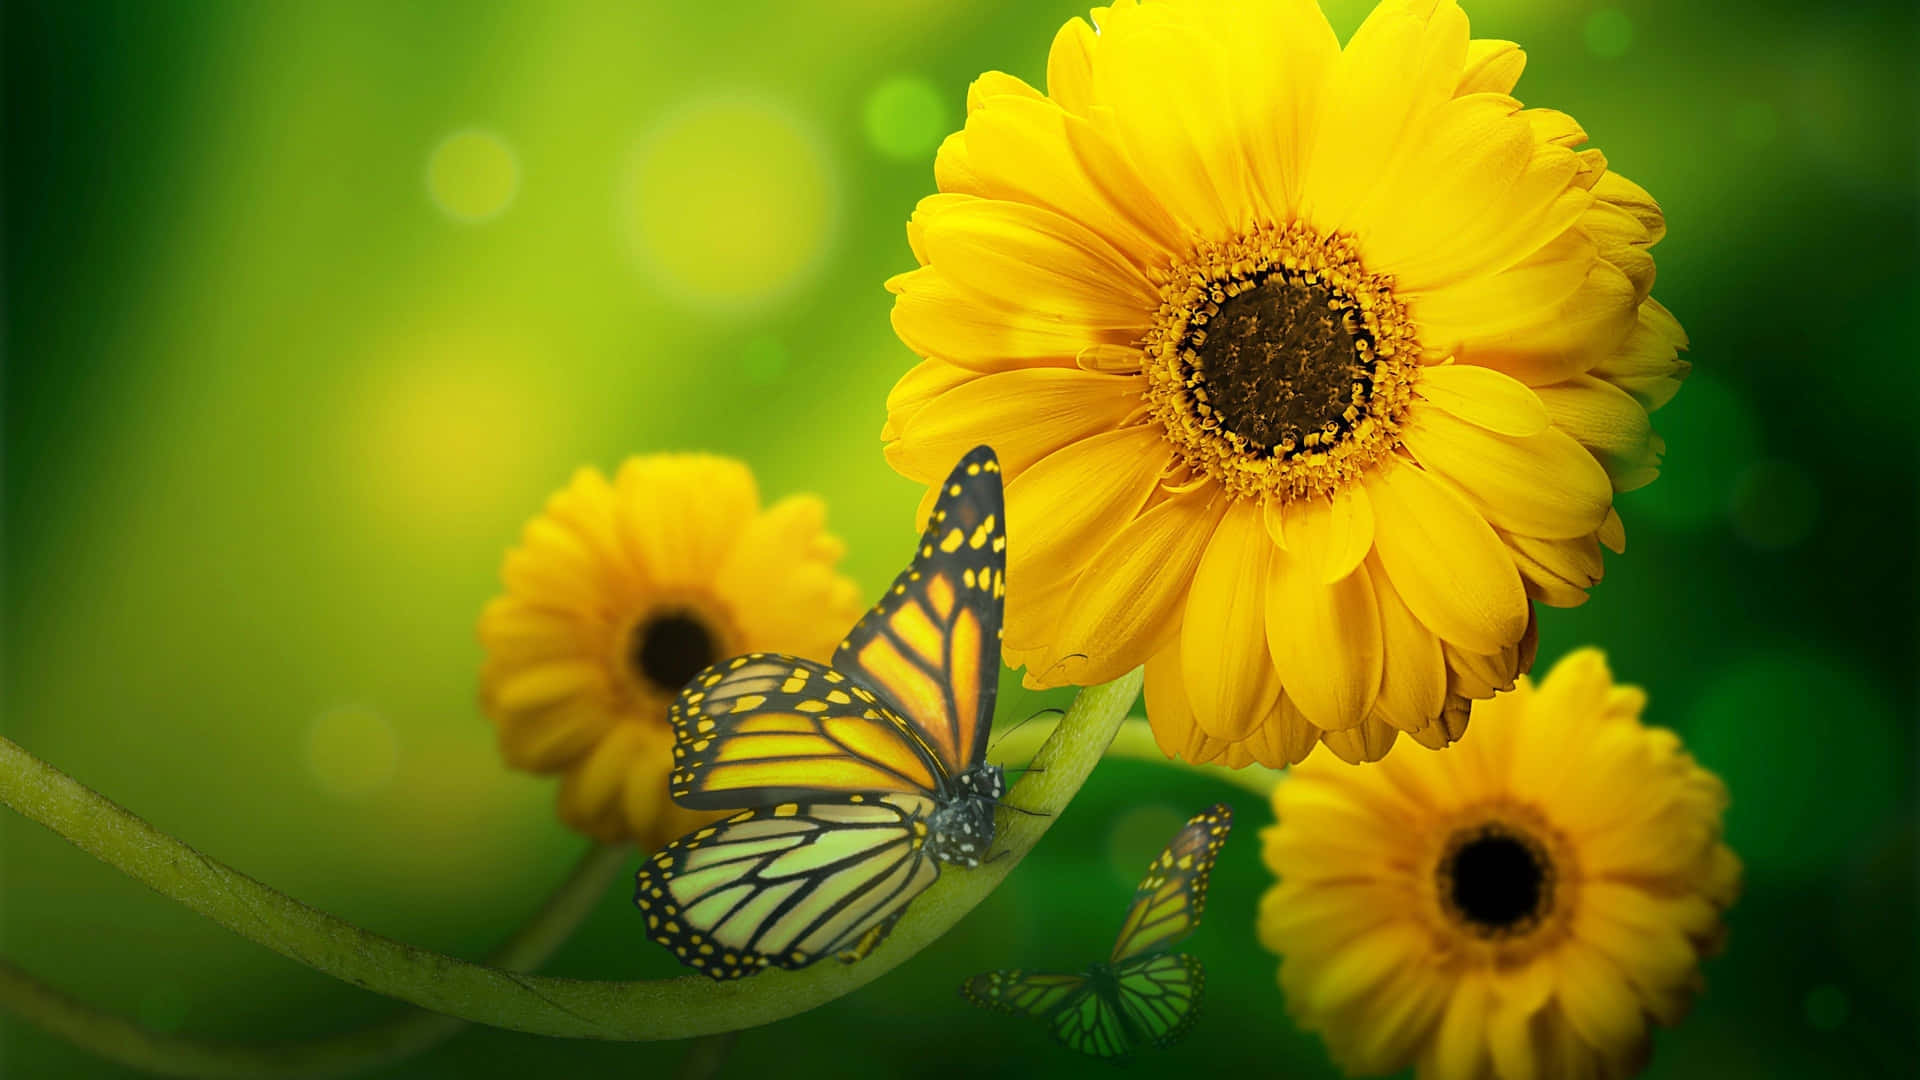 Sunflower_ Butterfly_ Serenity.jpg Wallpaper